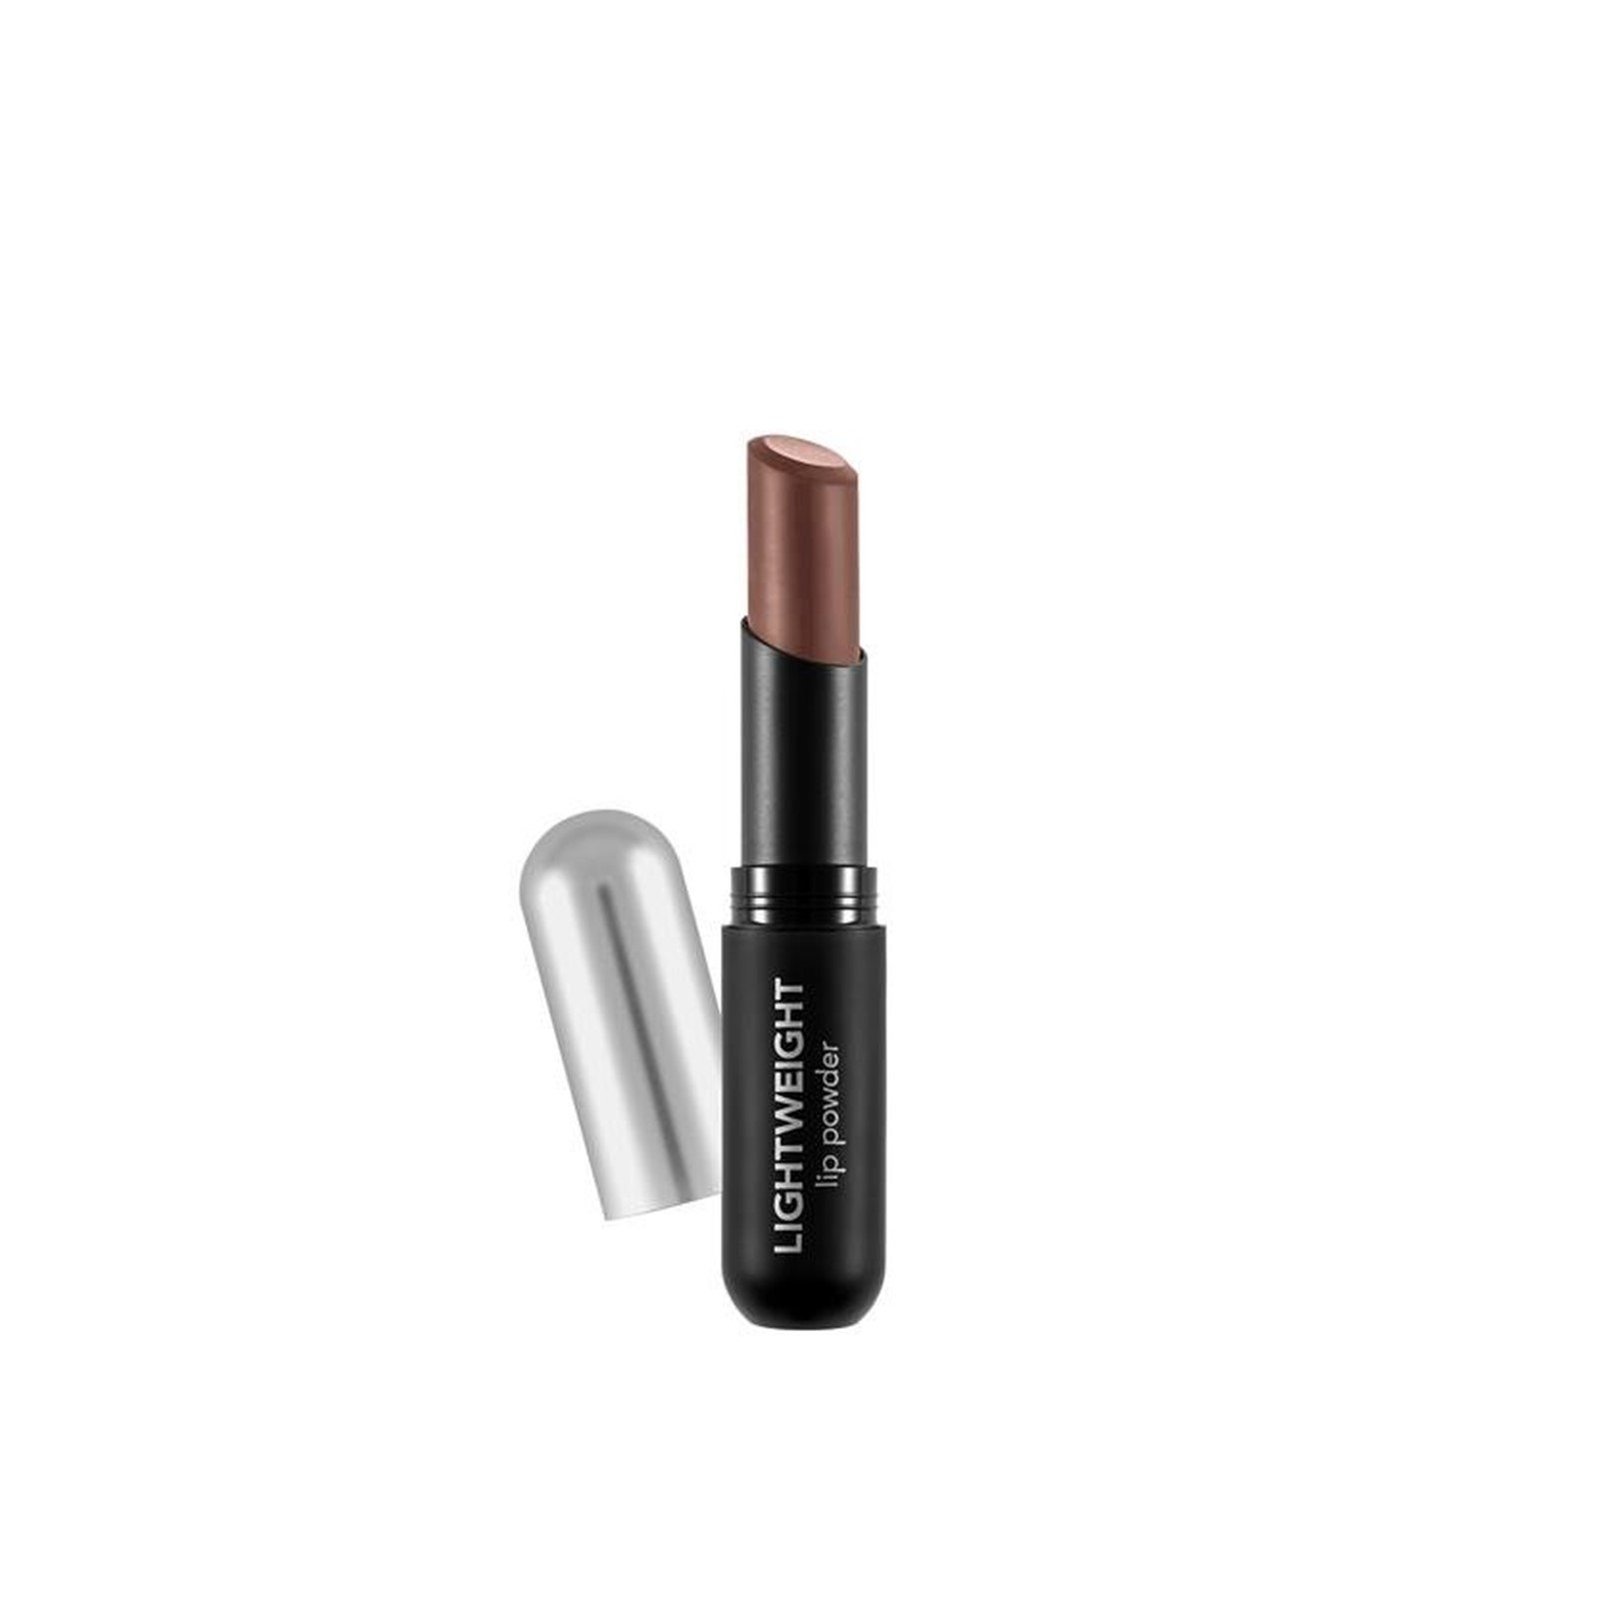 Flormar Lightweight Lip Powder Ultra Light Lipstick 005 Coffee Lover 3g (0.10oz)